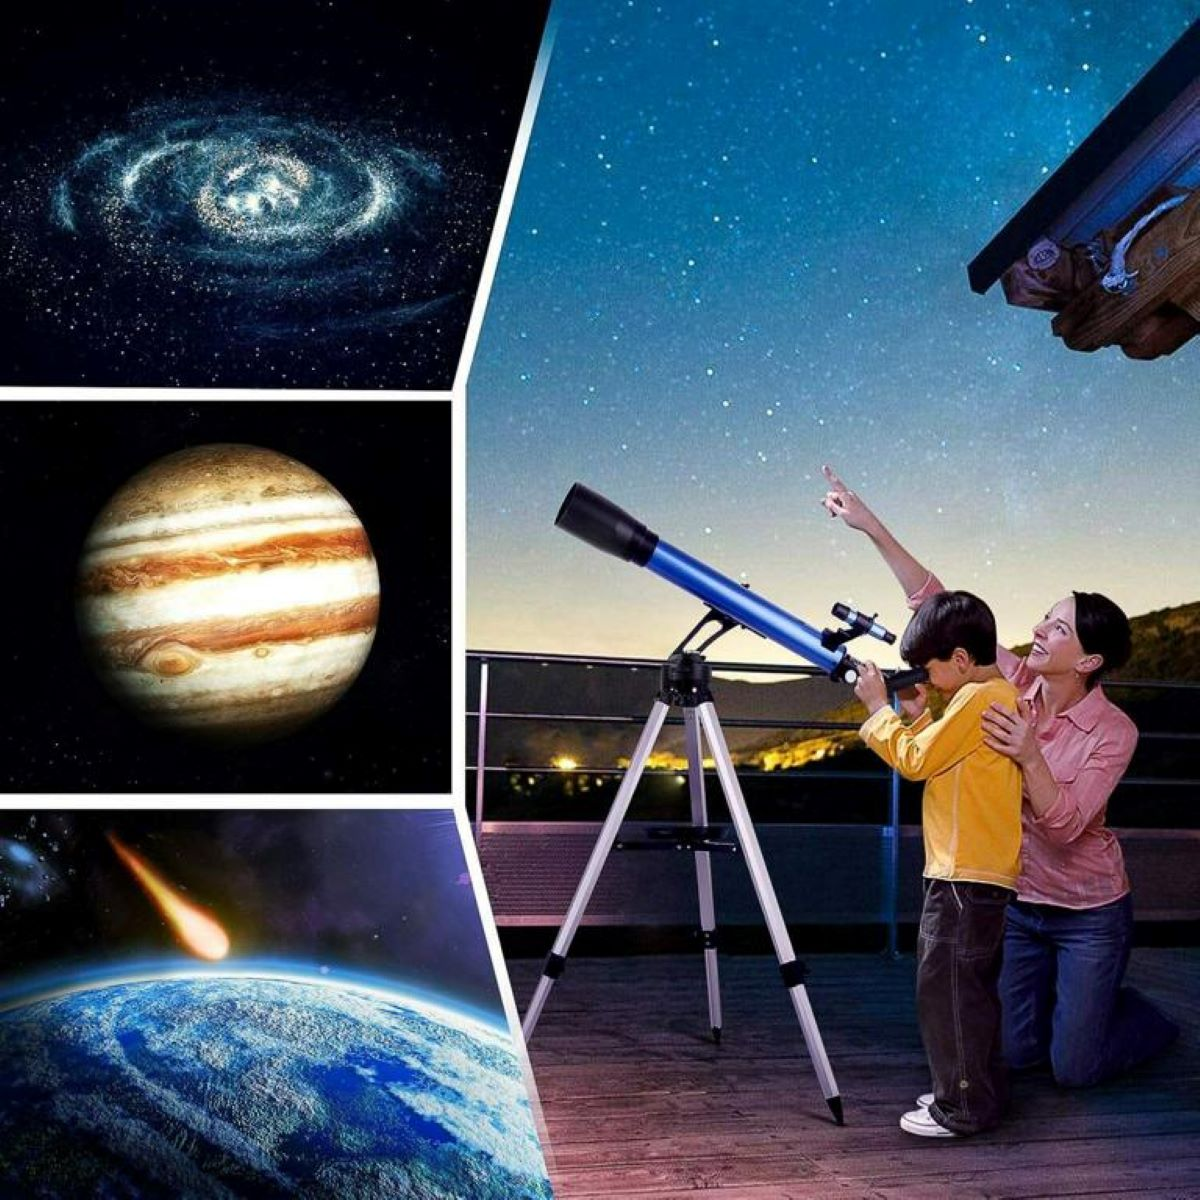 Teleskop 60 TELMU Binocular 117x, 28x, mm,